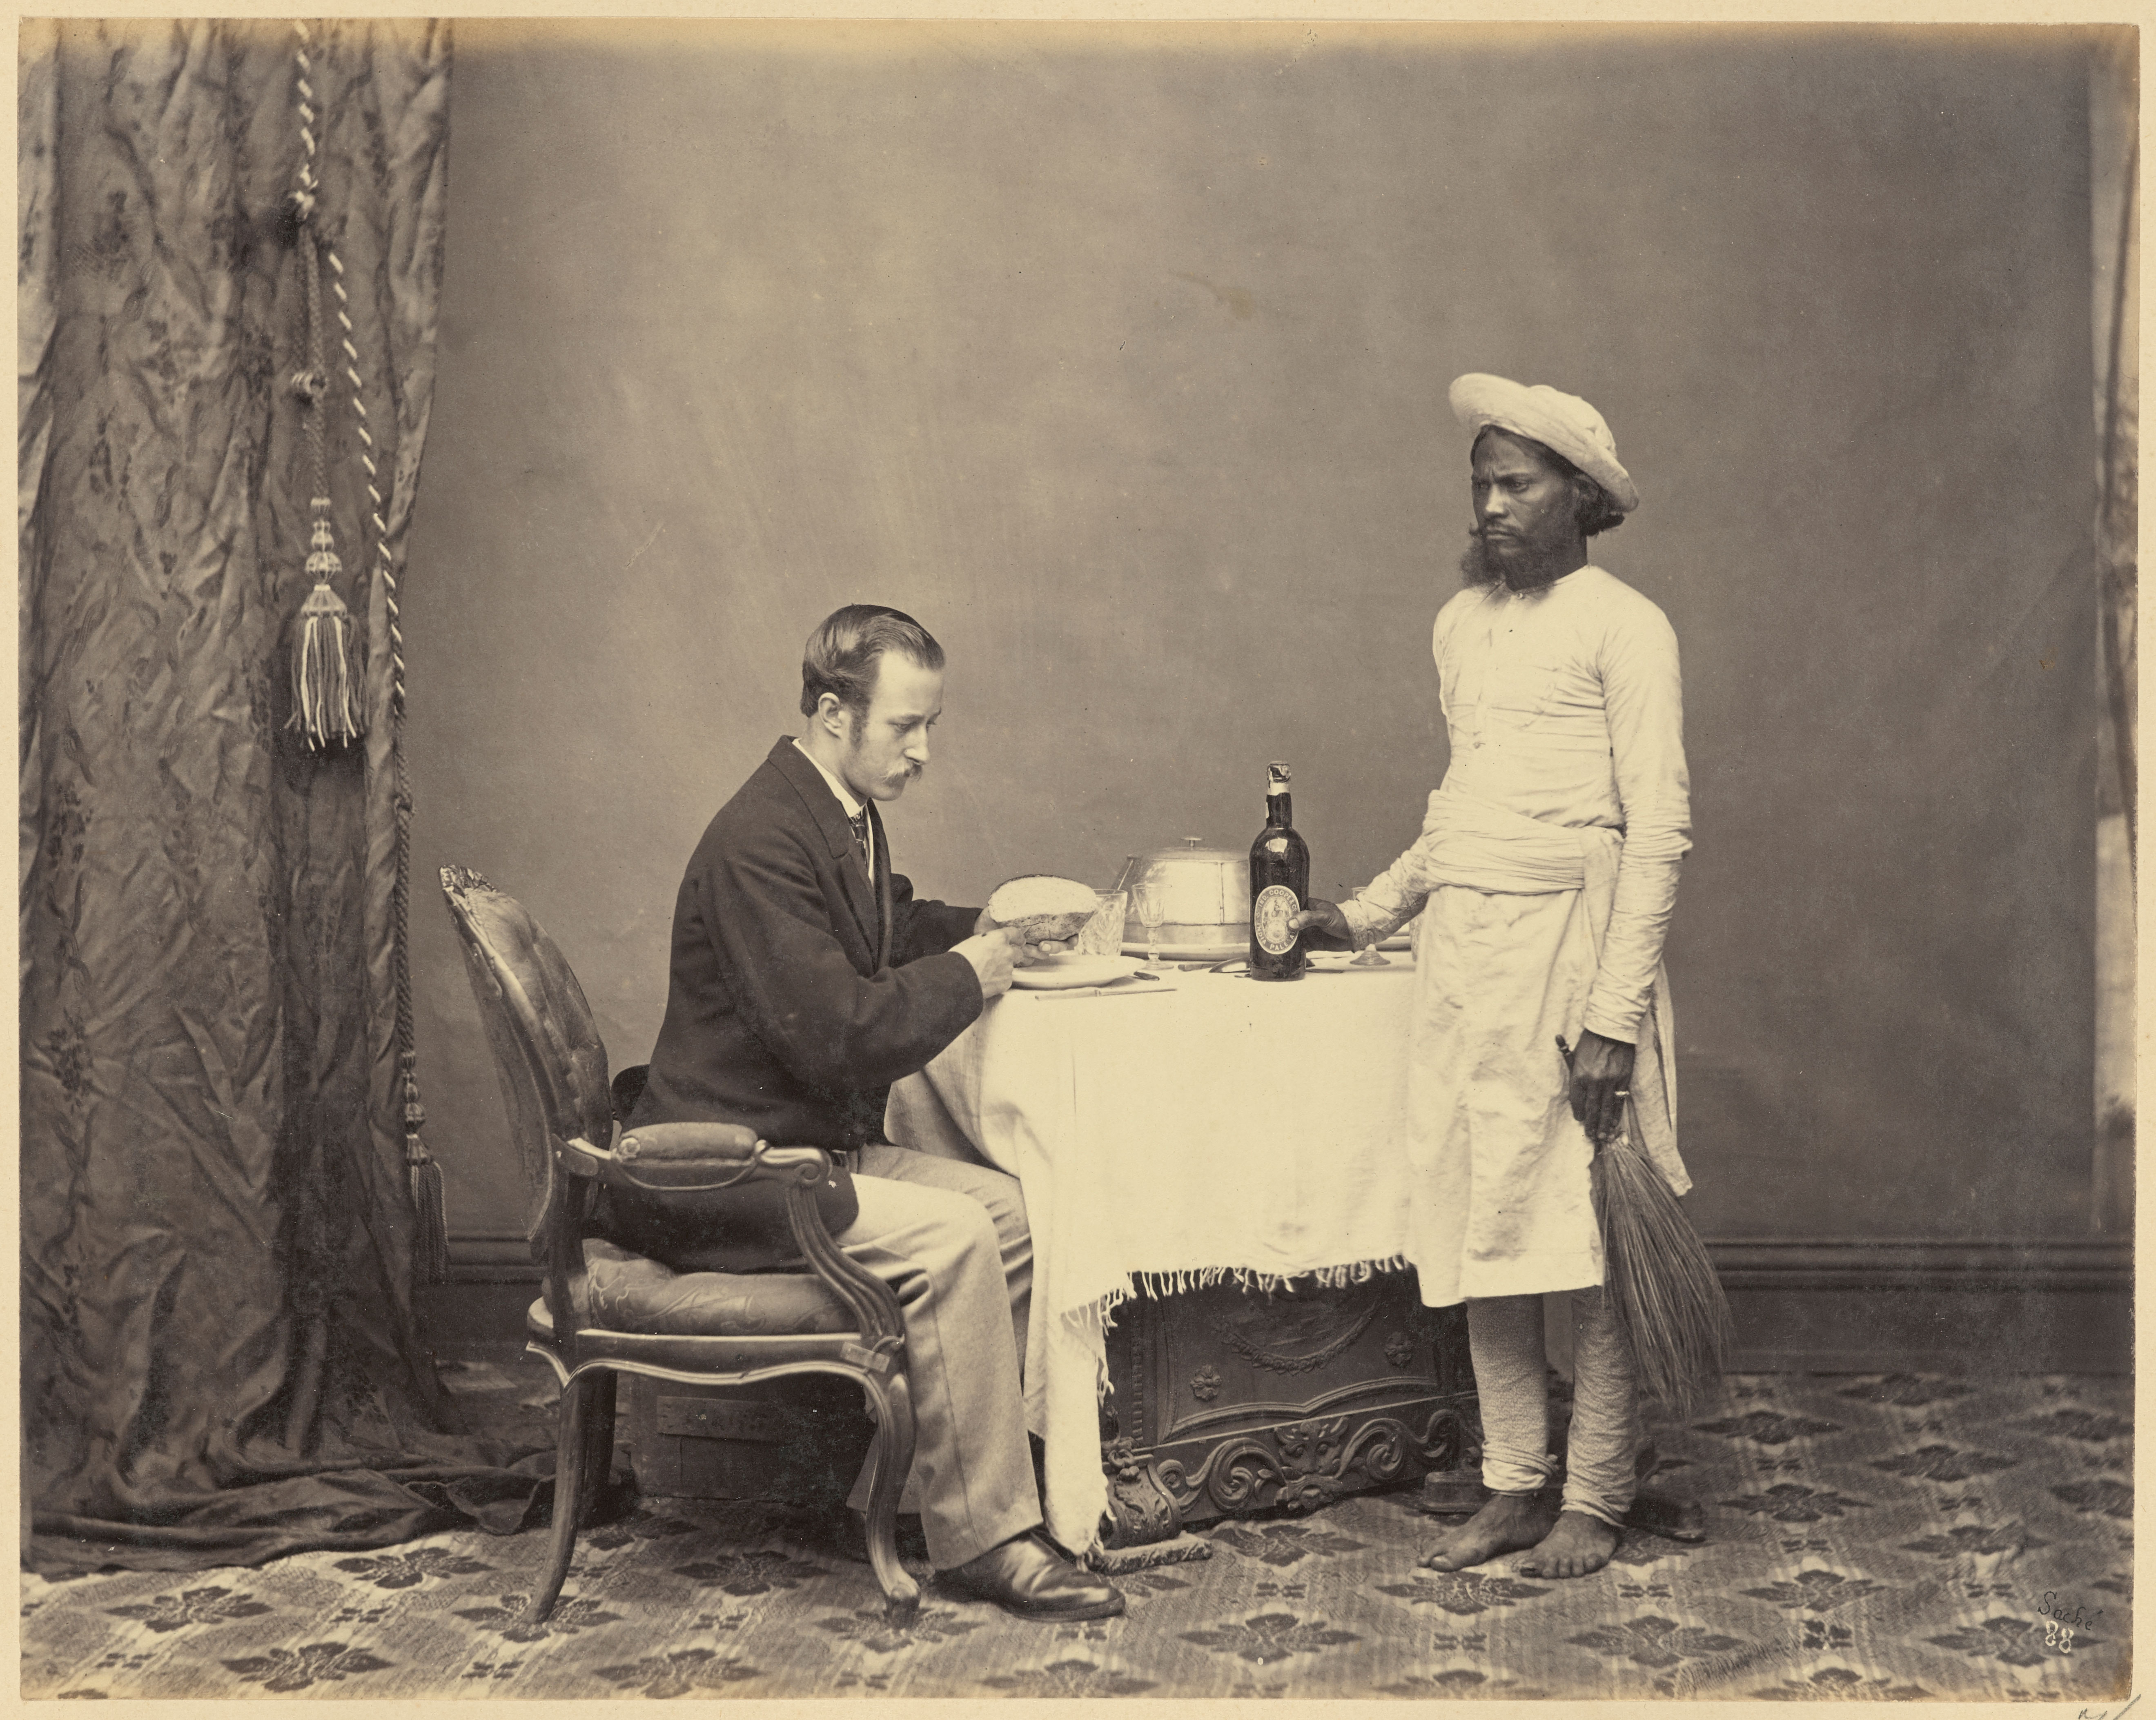 Kitmutgar or a Male Waiter - Circa 1860s